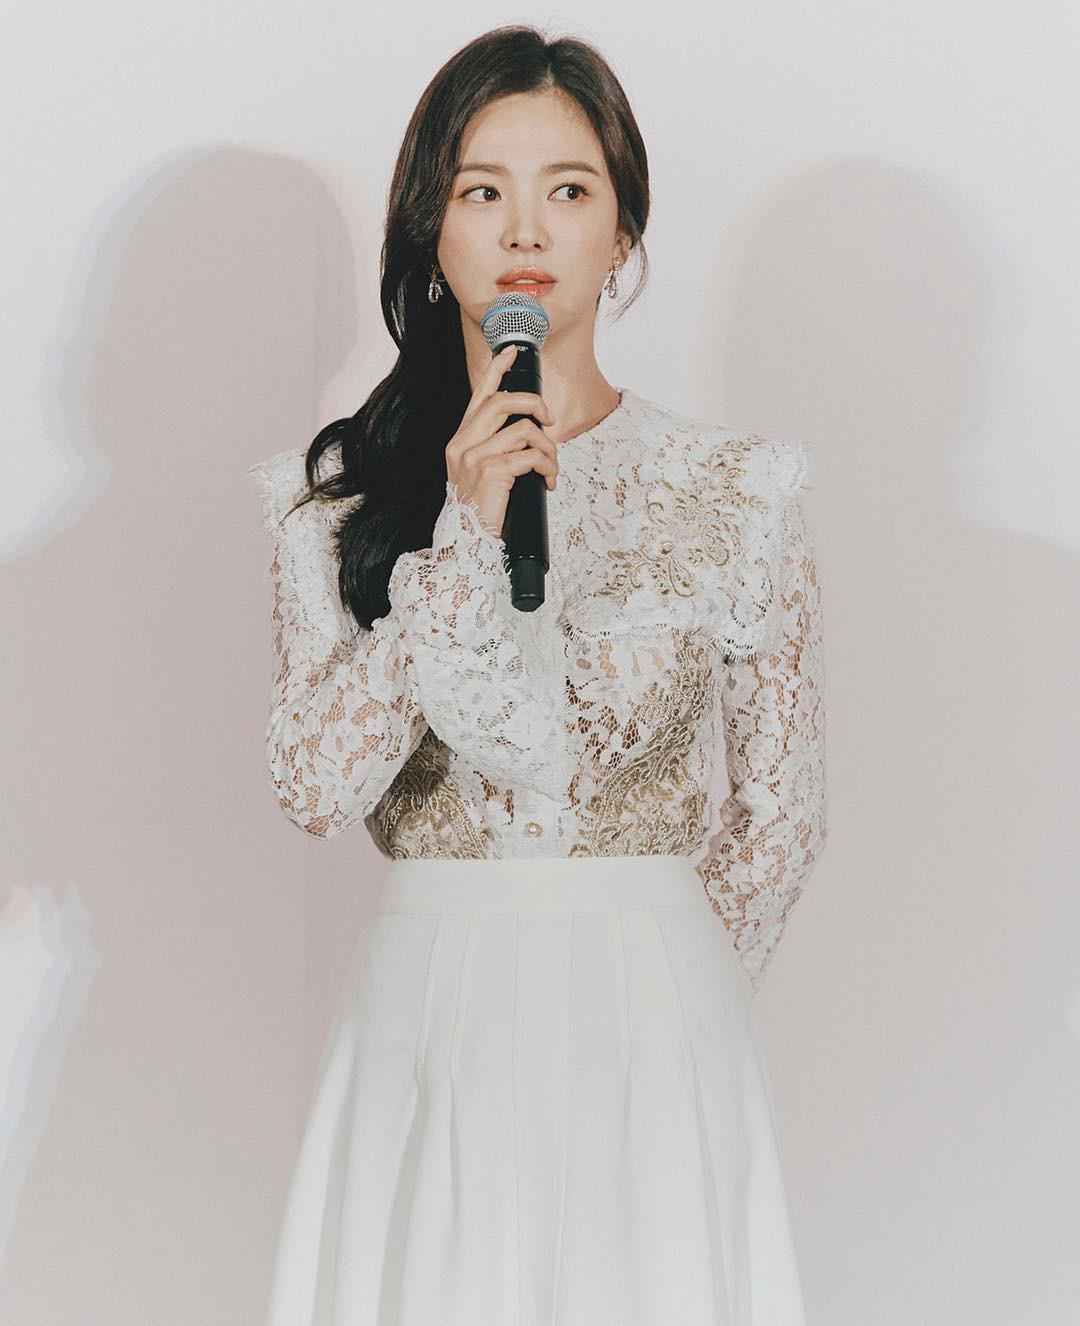 Ngay sau khi tháo nhẫn cưới: Style của Song Hye Kyo đã tiến bộ vượt bậc, không còn nhạt như nước ốc” giống trước kia-6